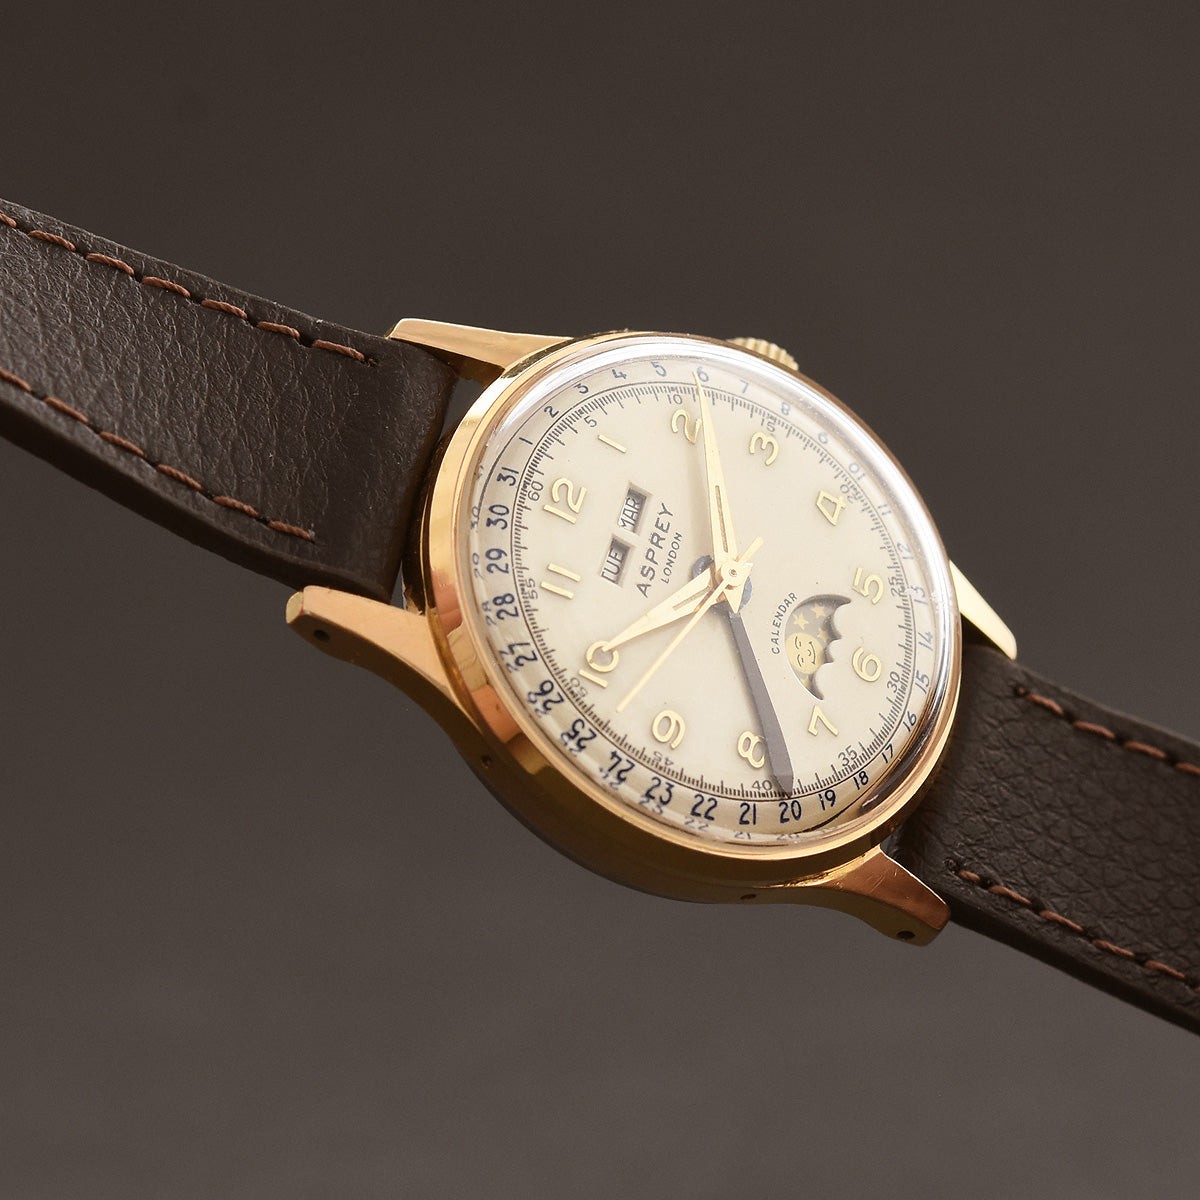 50s ASPREY Gents Triple Calendar Moonphase Vintage Swiss Watch